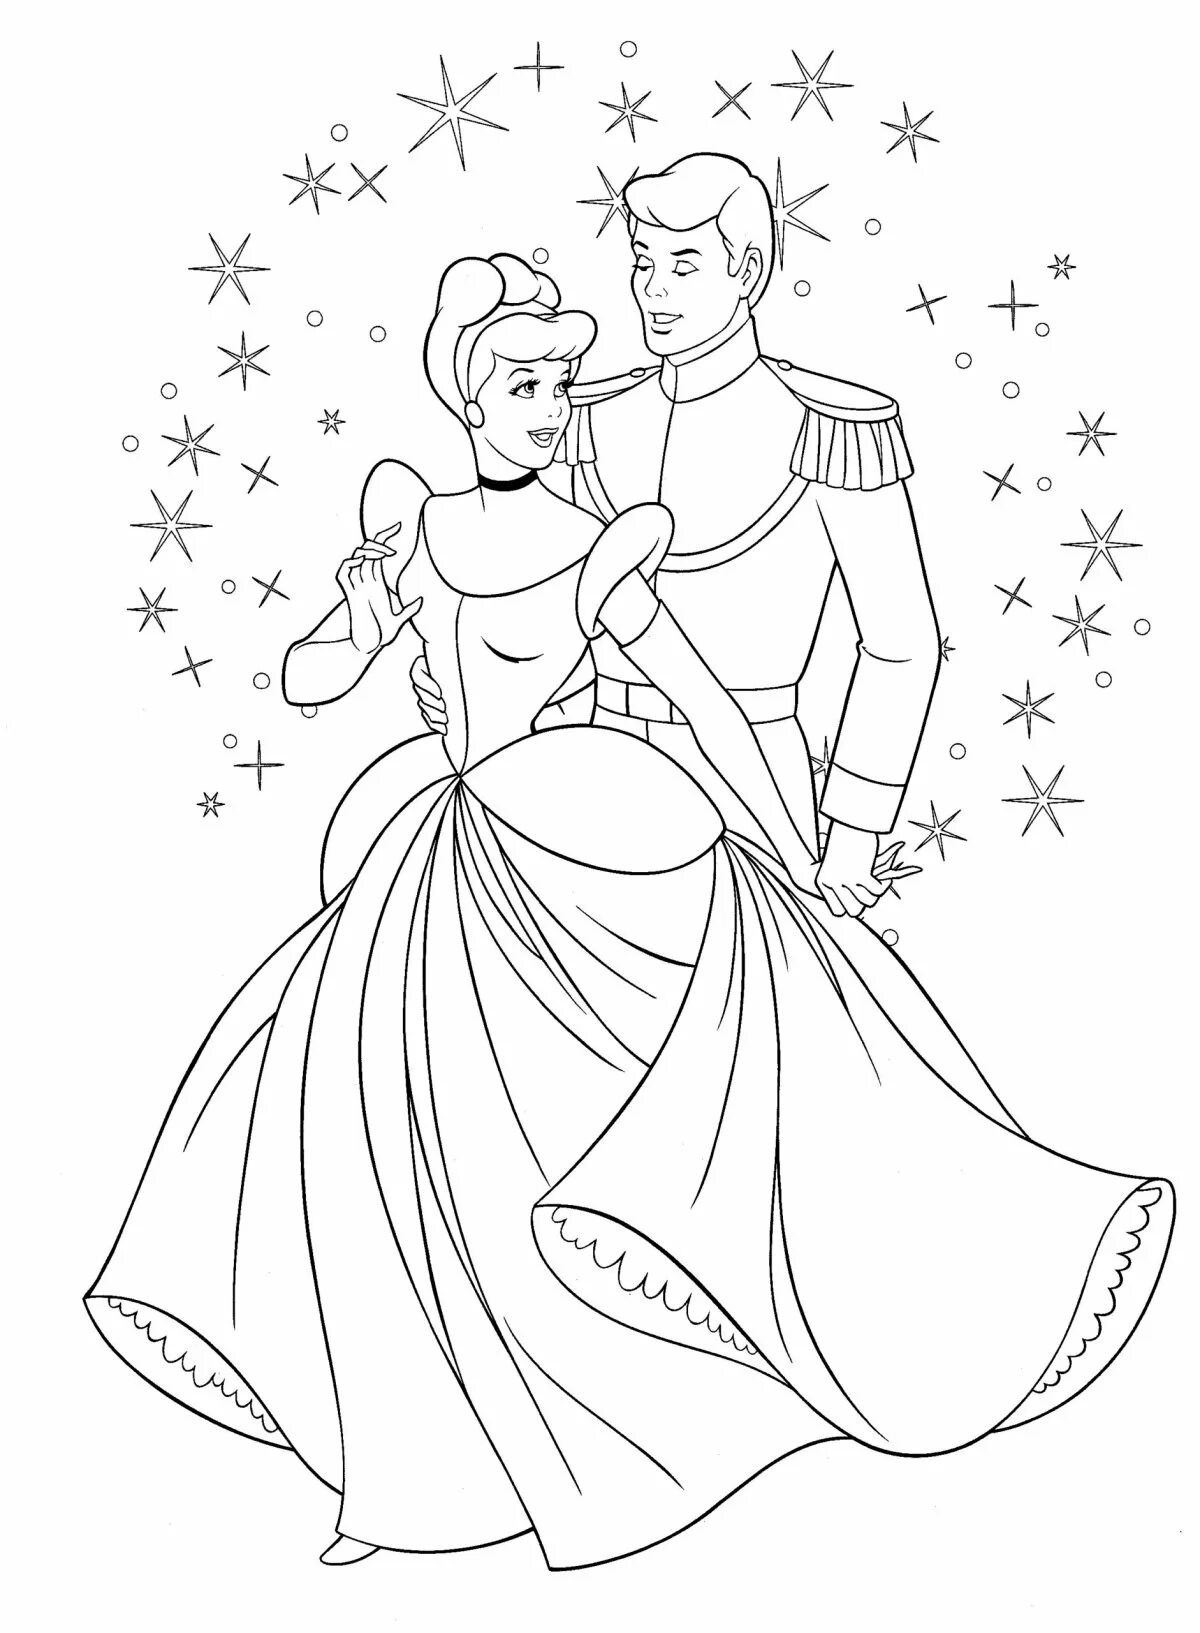 Раскраска Дисней Золушка принц. Раскраска принцесса Золушка с принцем. Золушка с принцем раскраска. Рисунок Золушки для срисовки. Нарисовать карандашом бал